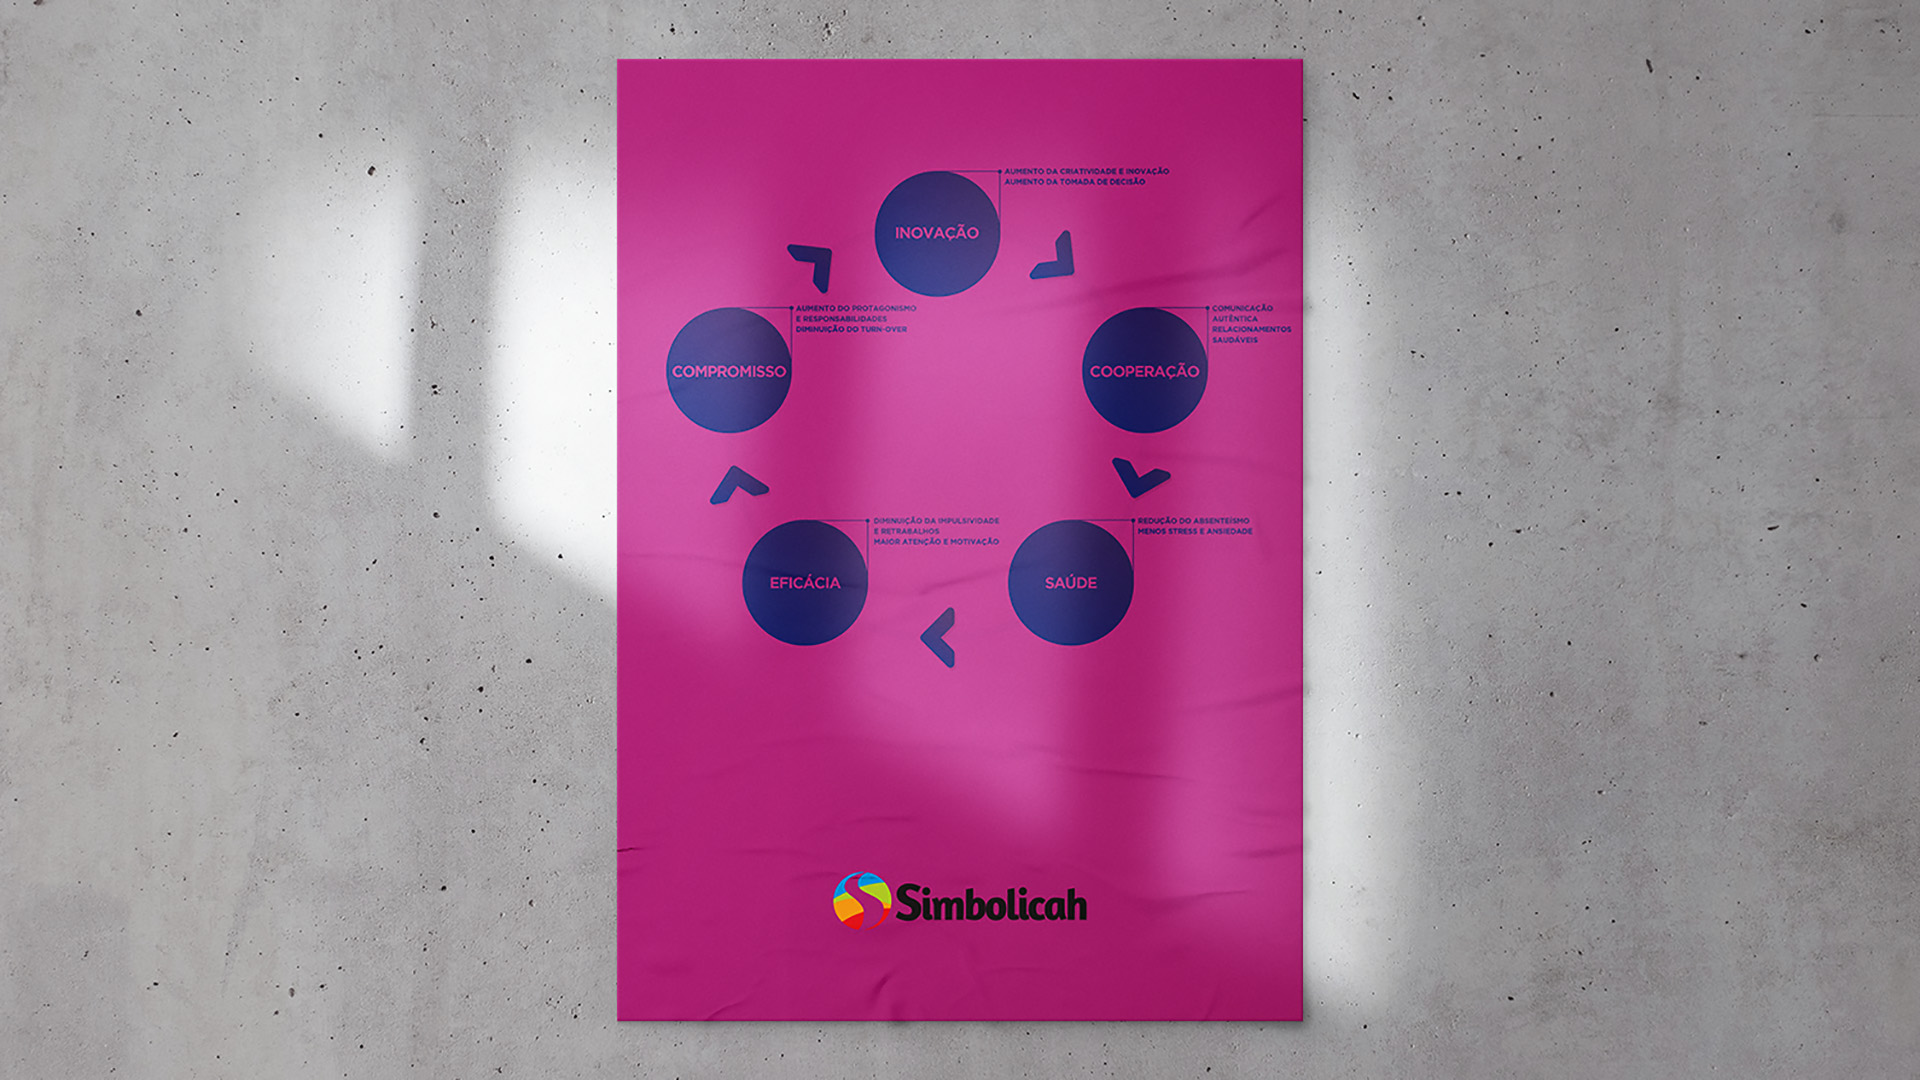 Imagem de poster colado na parede com infográfico da identidade visual Simbolicah.